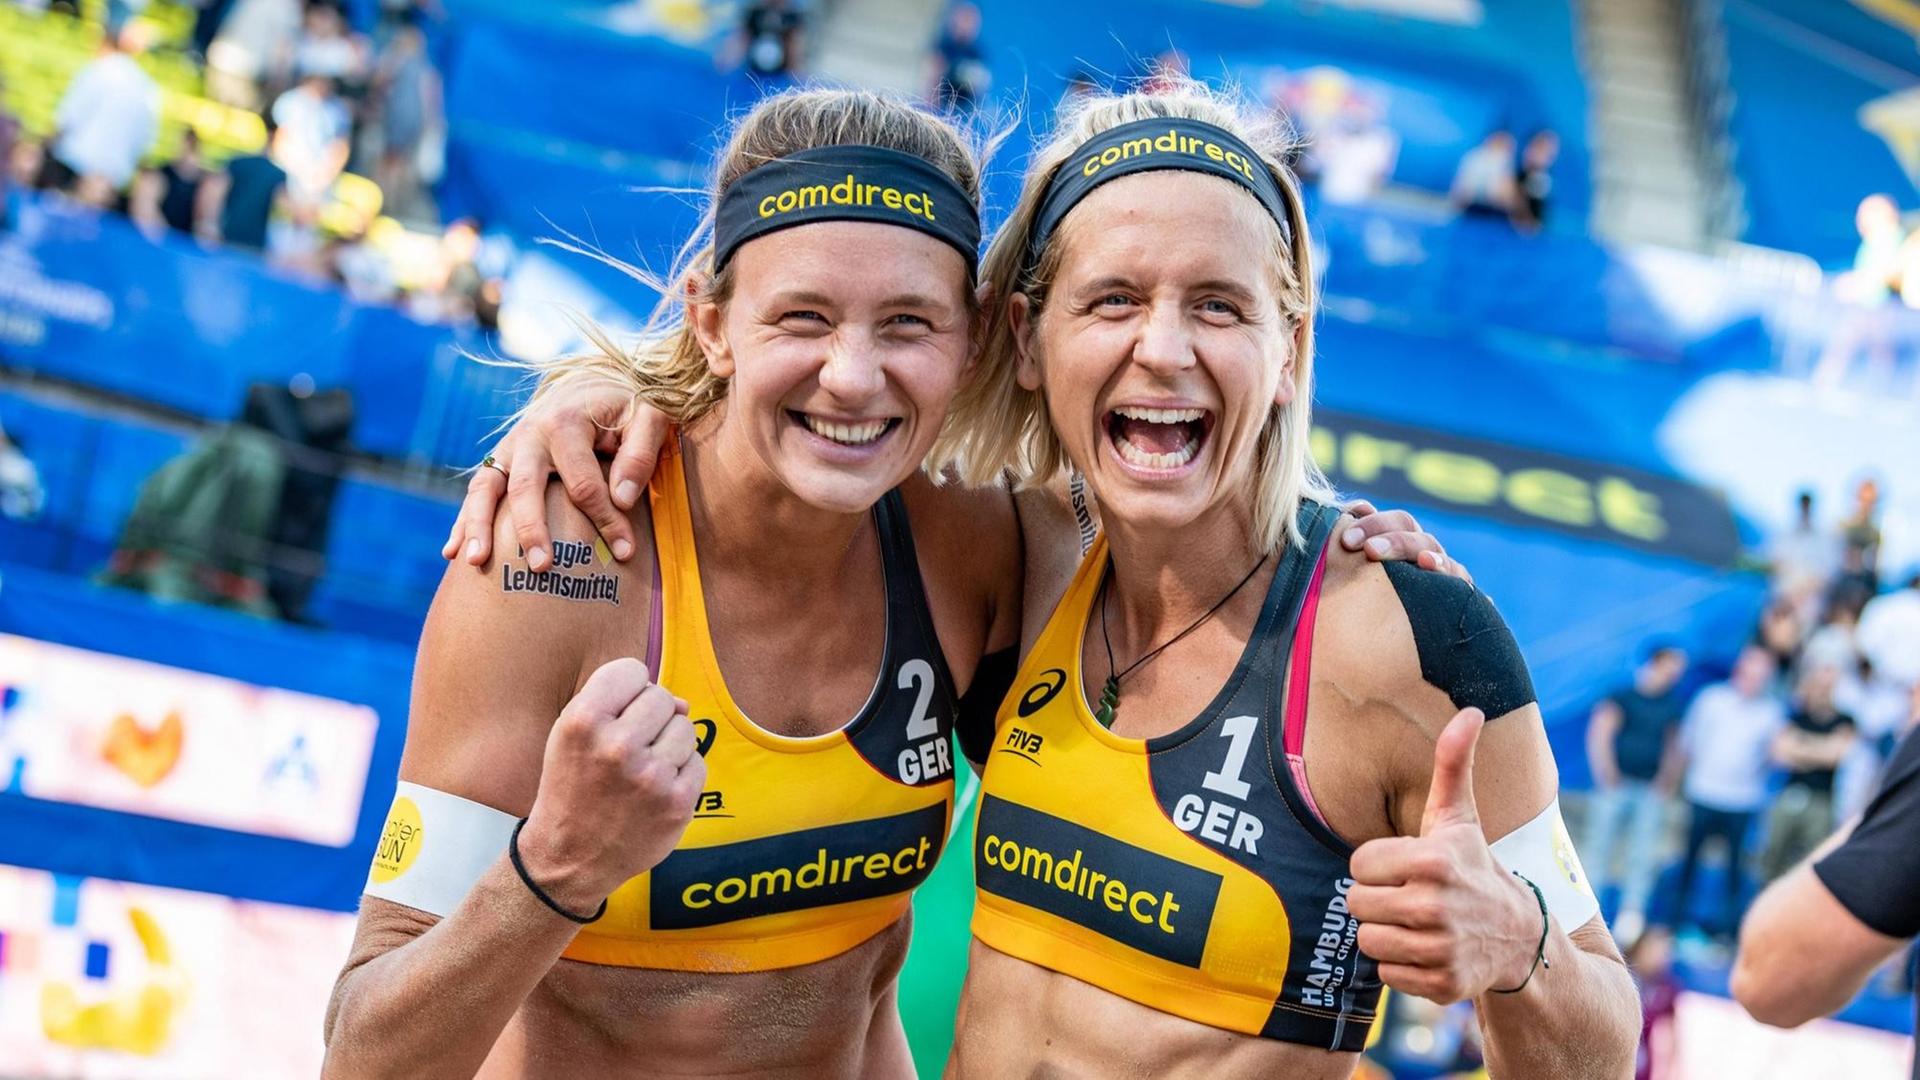 Beachvolleyball World Championships Hamburg 2019 am 28.06.2019. Margareta Kozuch und Laura Ludwig posieren selbstsicher in die Kamera.